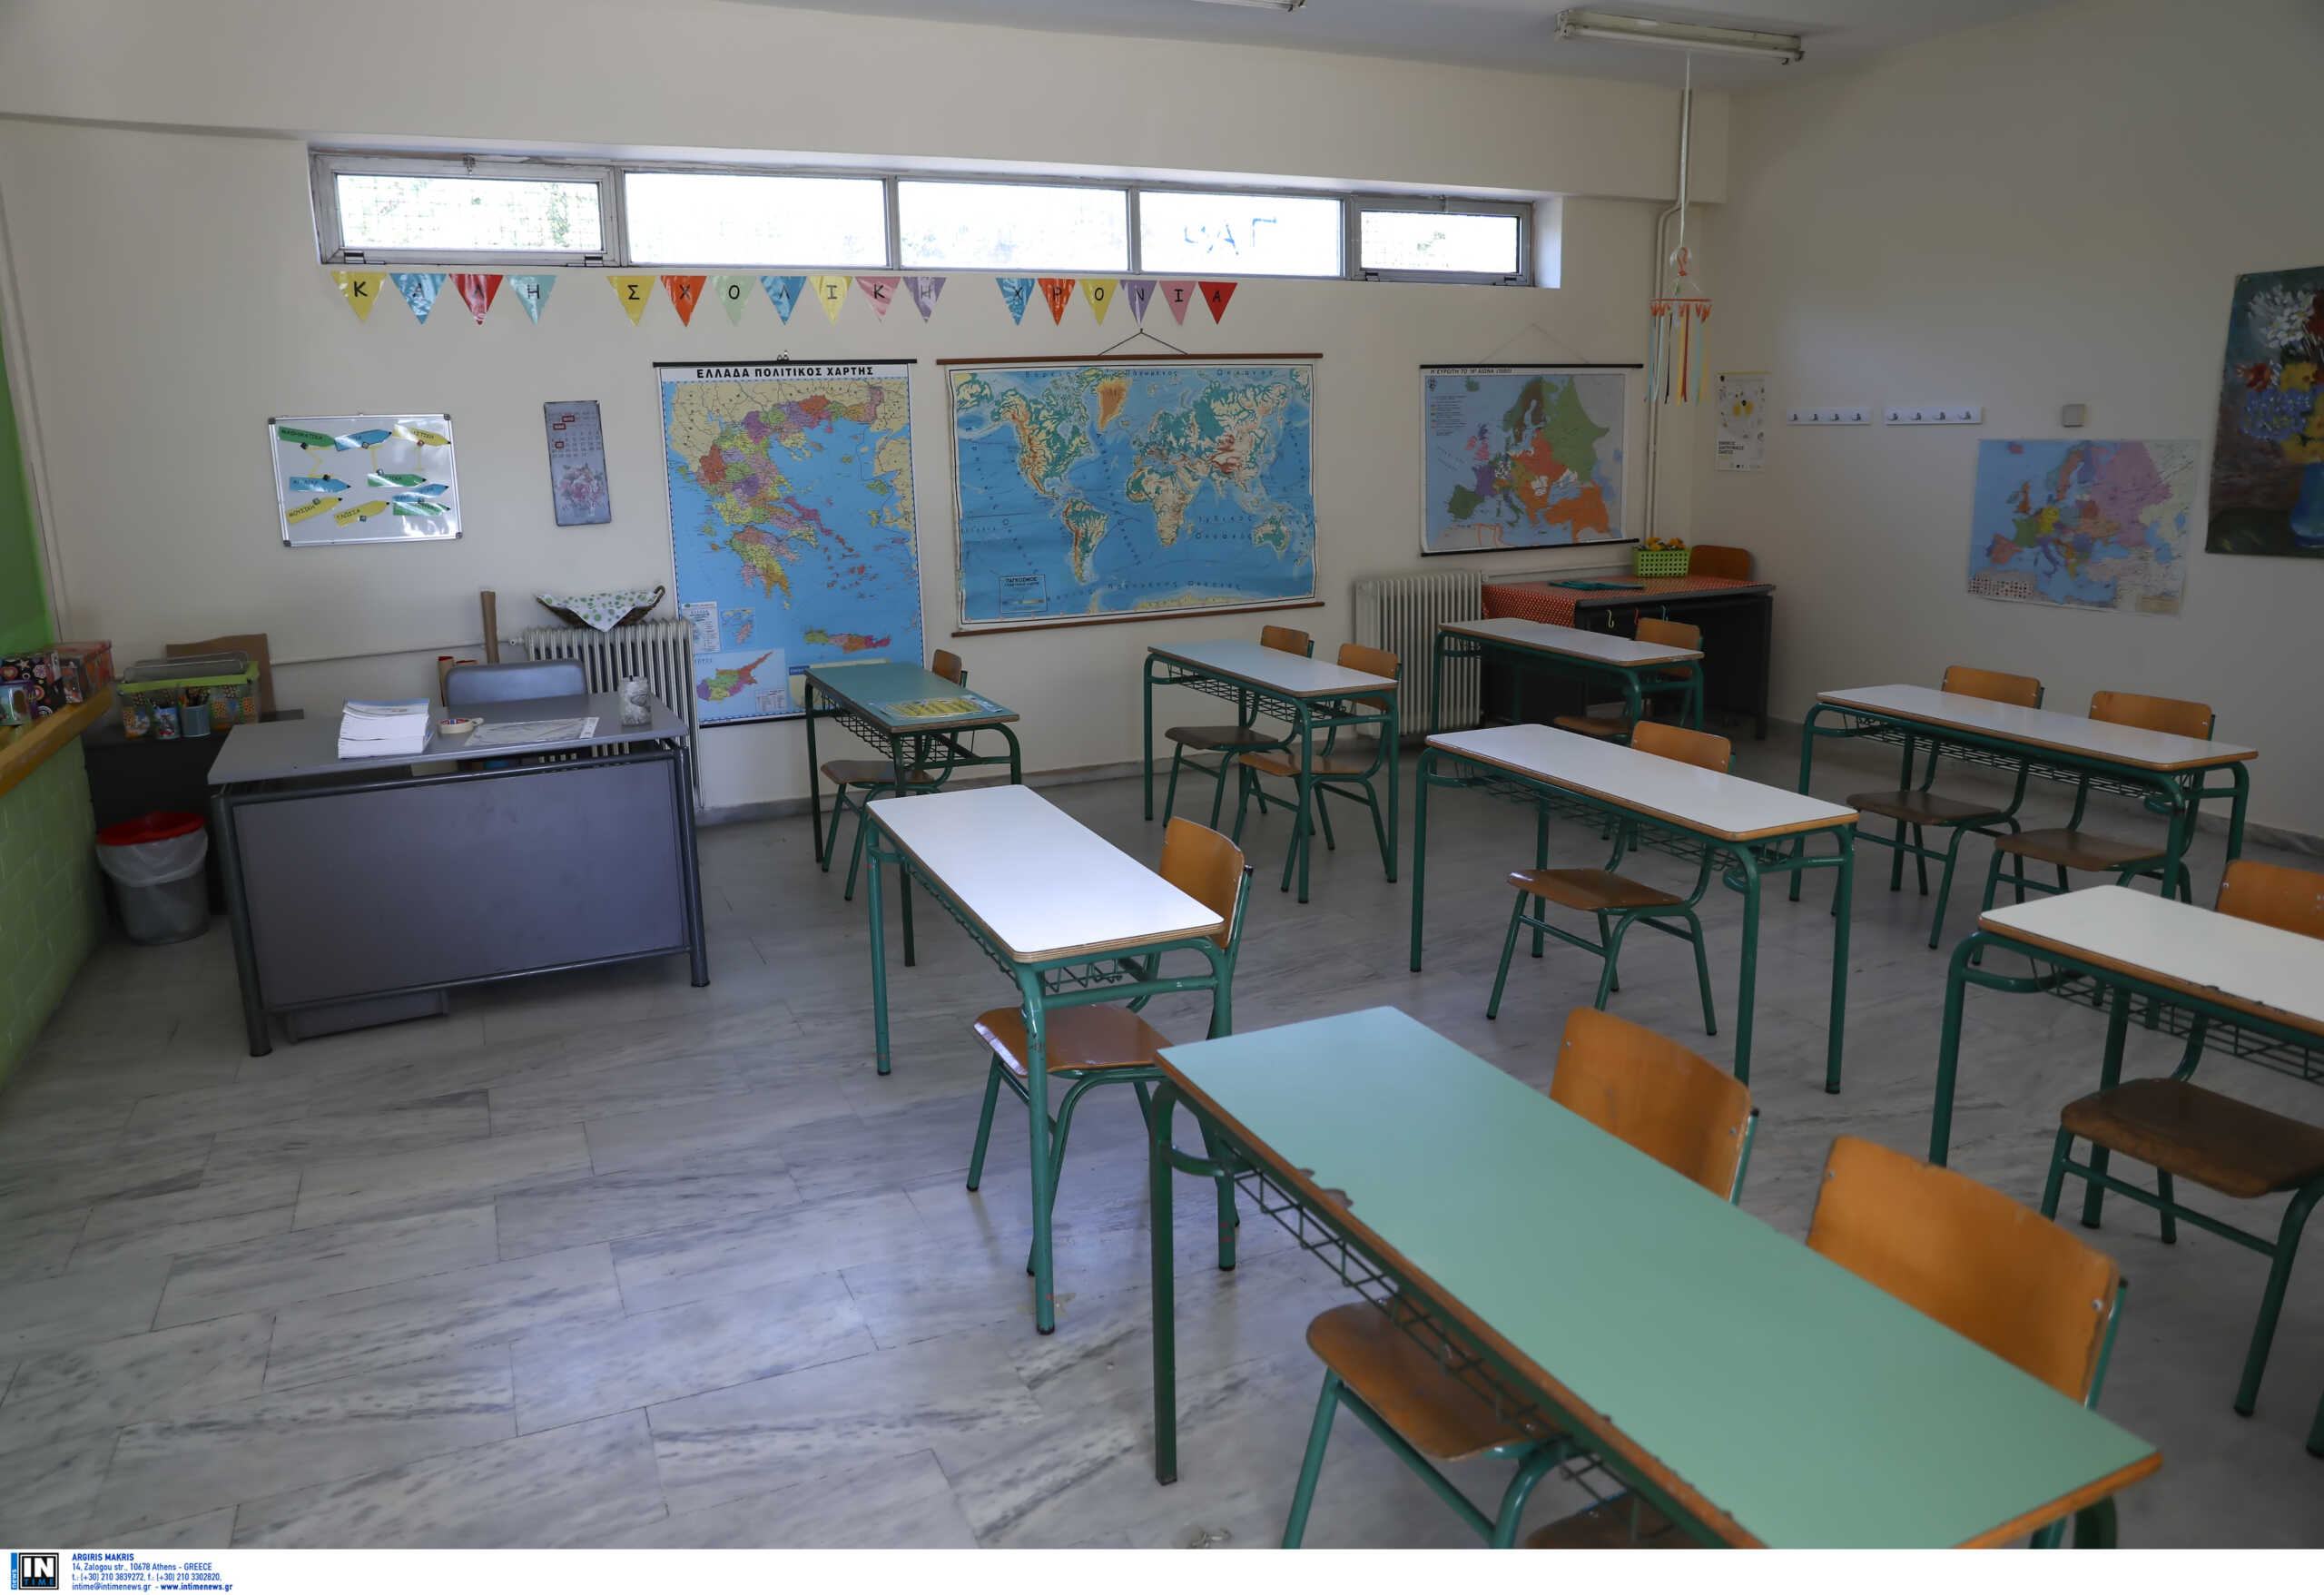 Τριών Ιεραρχών: Κανονικά τα σχολεία, κλειστά φροντιστήρια και κέντρα ξένων γλωσσών